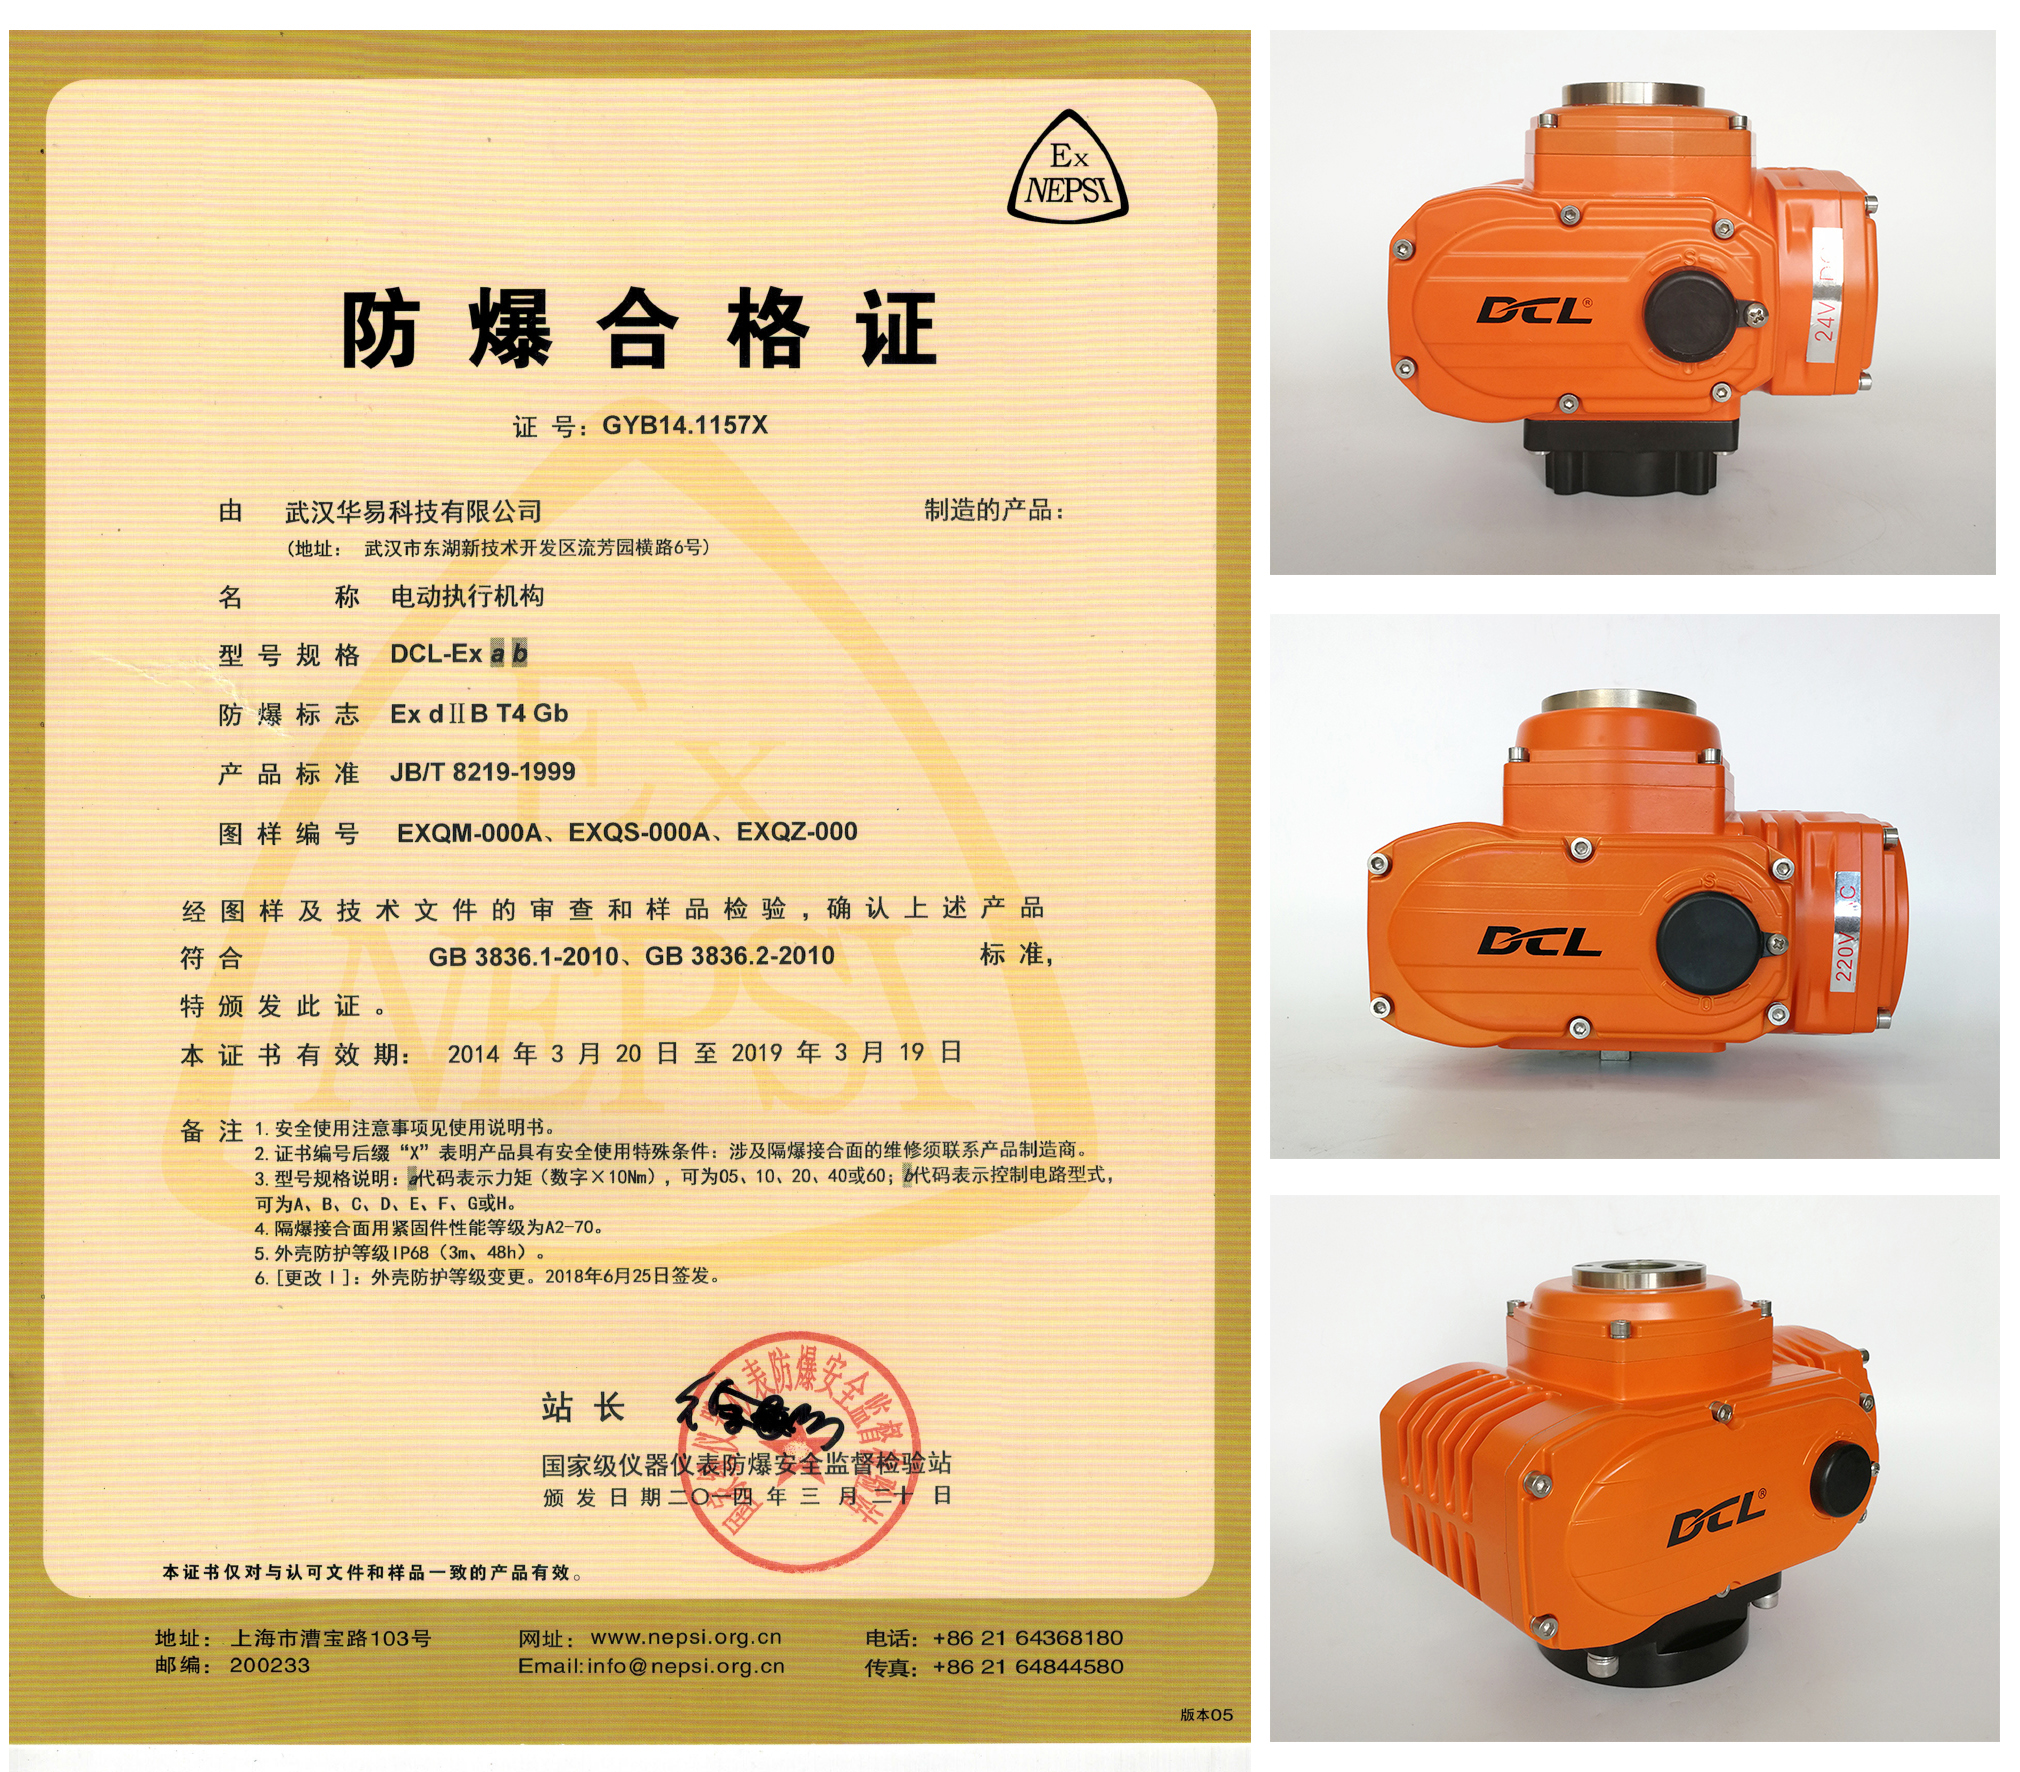 2010年12月：EXQZ、EXQS、EXQM三大系列防爆型电动执行机构经上海仪器仪表防爆安全监督检验站检测，符合GB3836.1-2010、GB3836.2-2010标准要求，并被授予防爆合格证书；